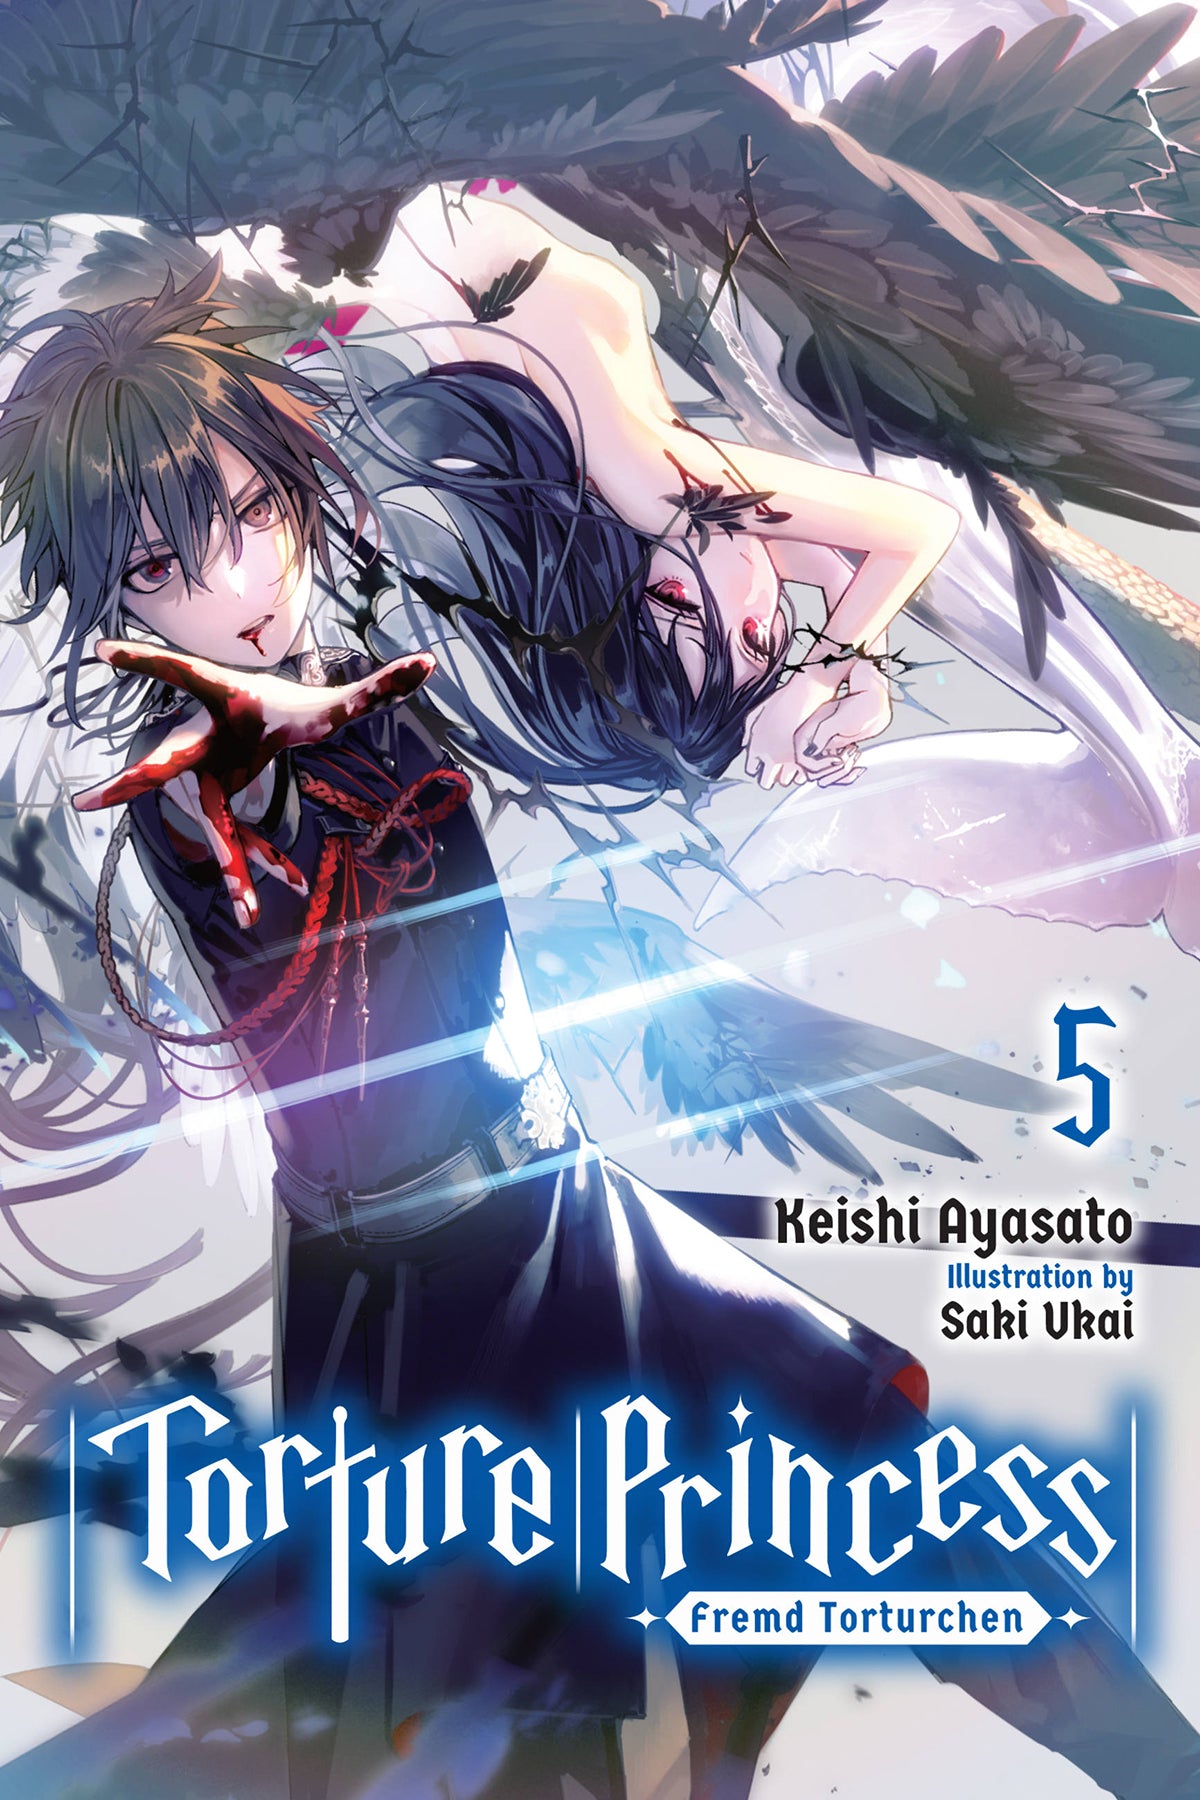 Torture Princess: Fremd Torturchen Vol. 05 (Light Novel)